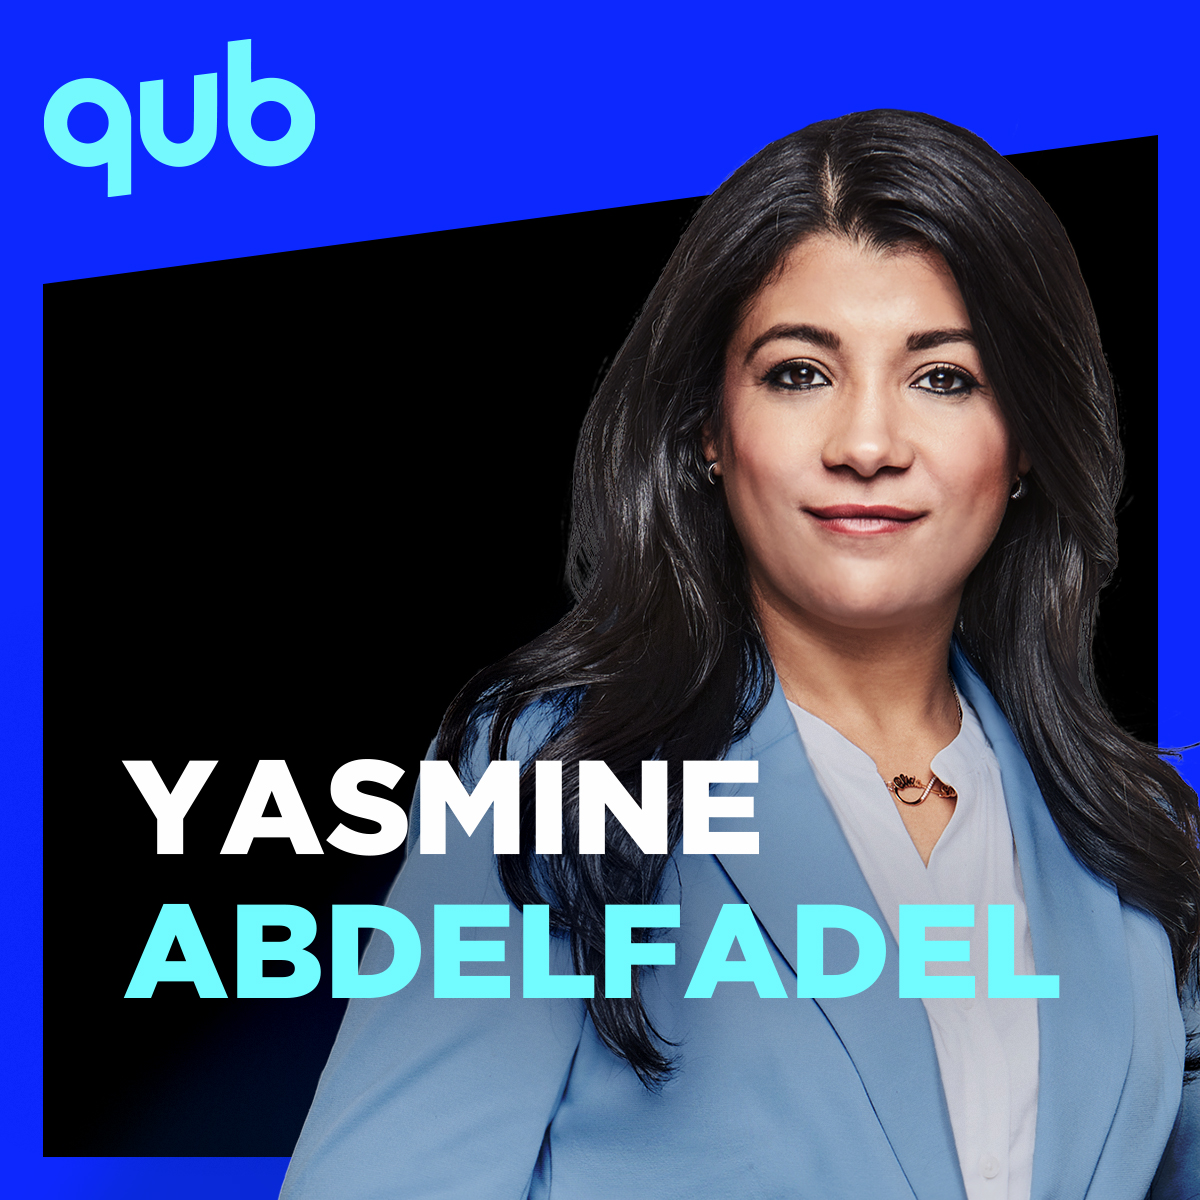 «Il y a une échelle de wokisme à Québec solidaire qu’il faut respecter pour être candidat», constate Yasmine Abdelfadel